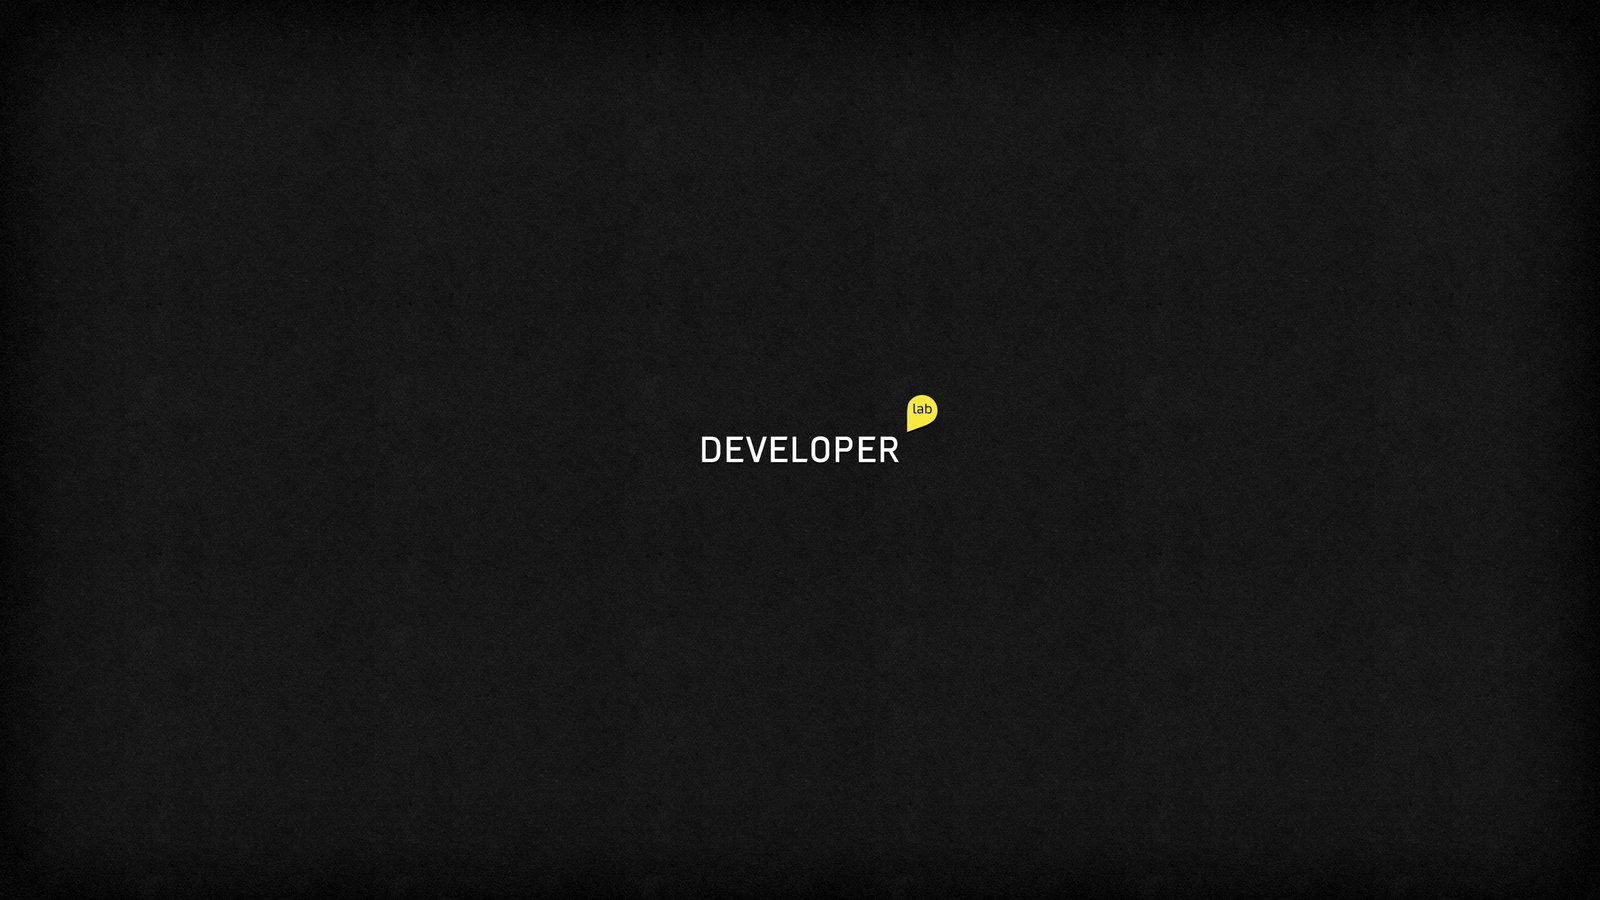 Developer Wallpaper. Logo facebook, Development, Web development